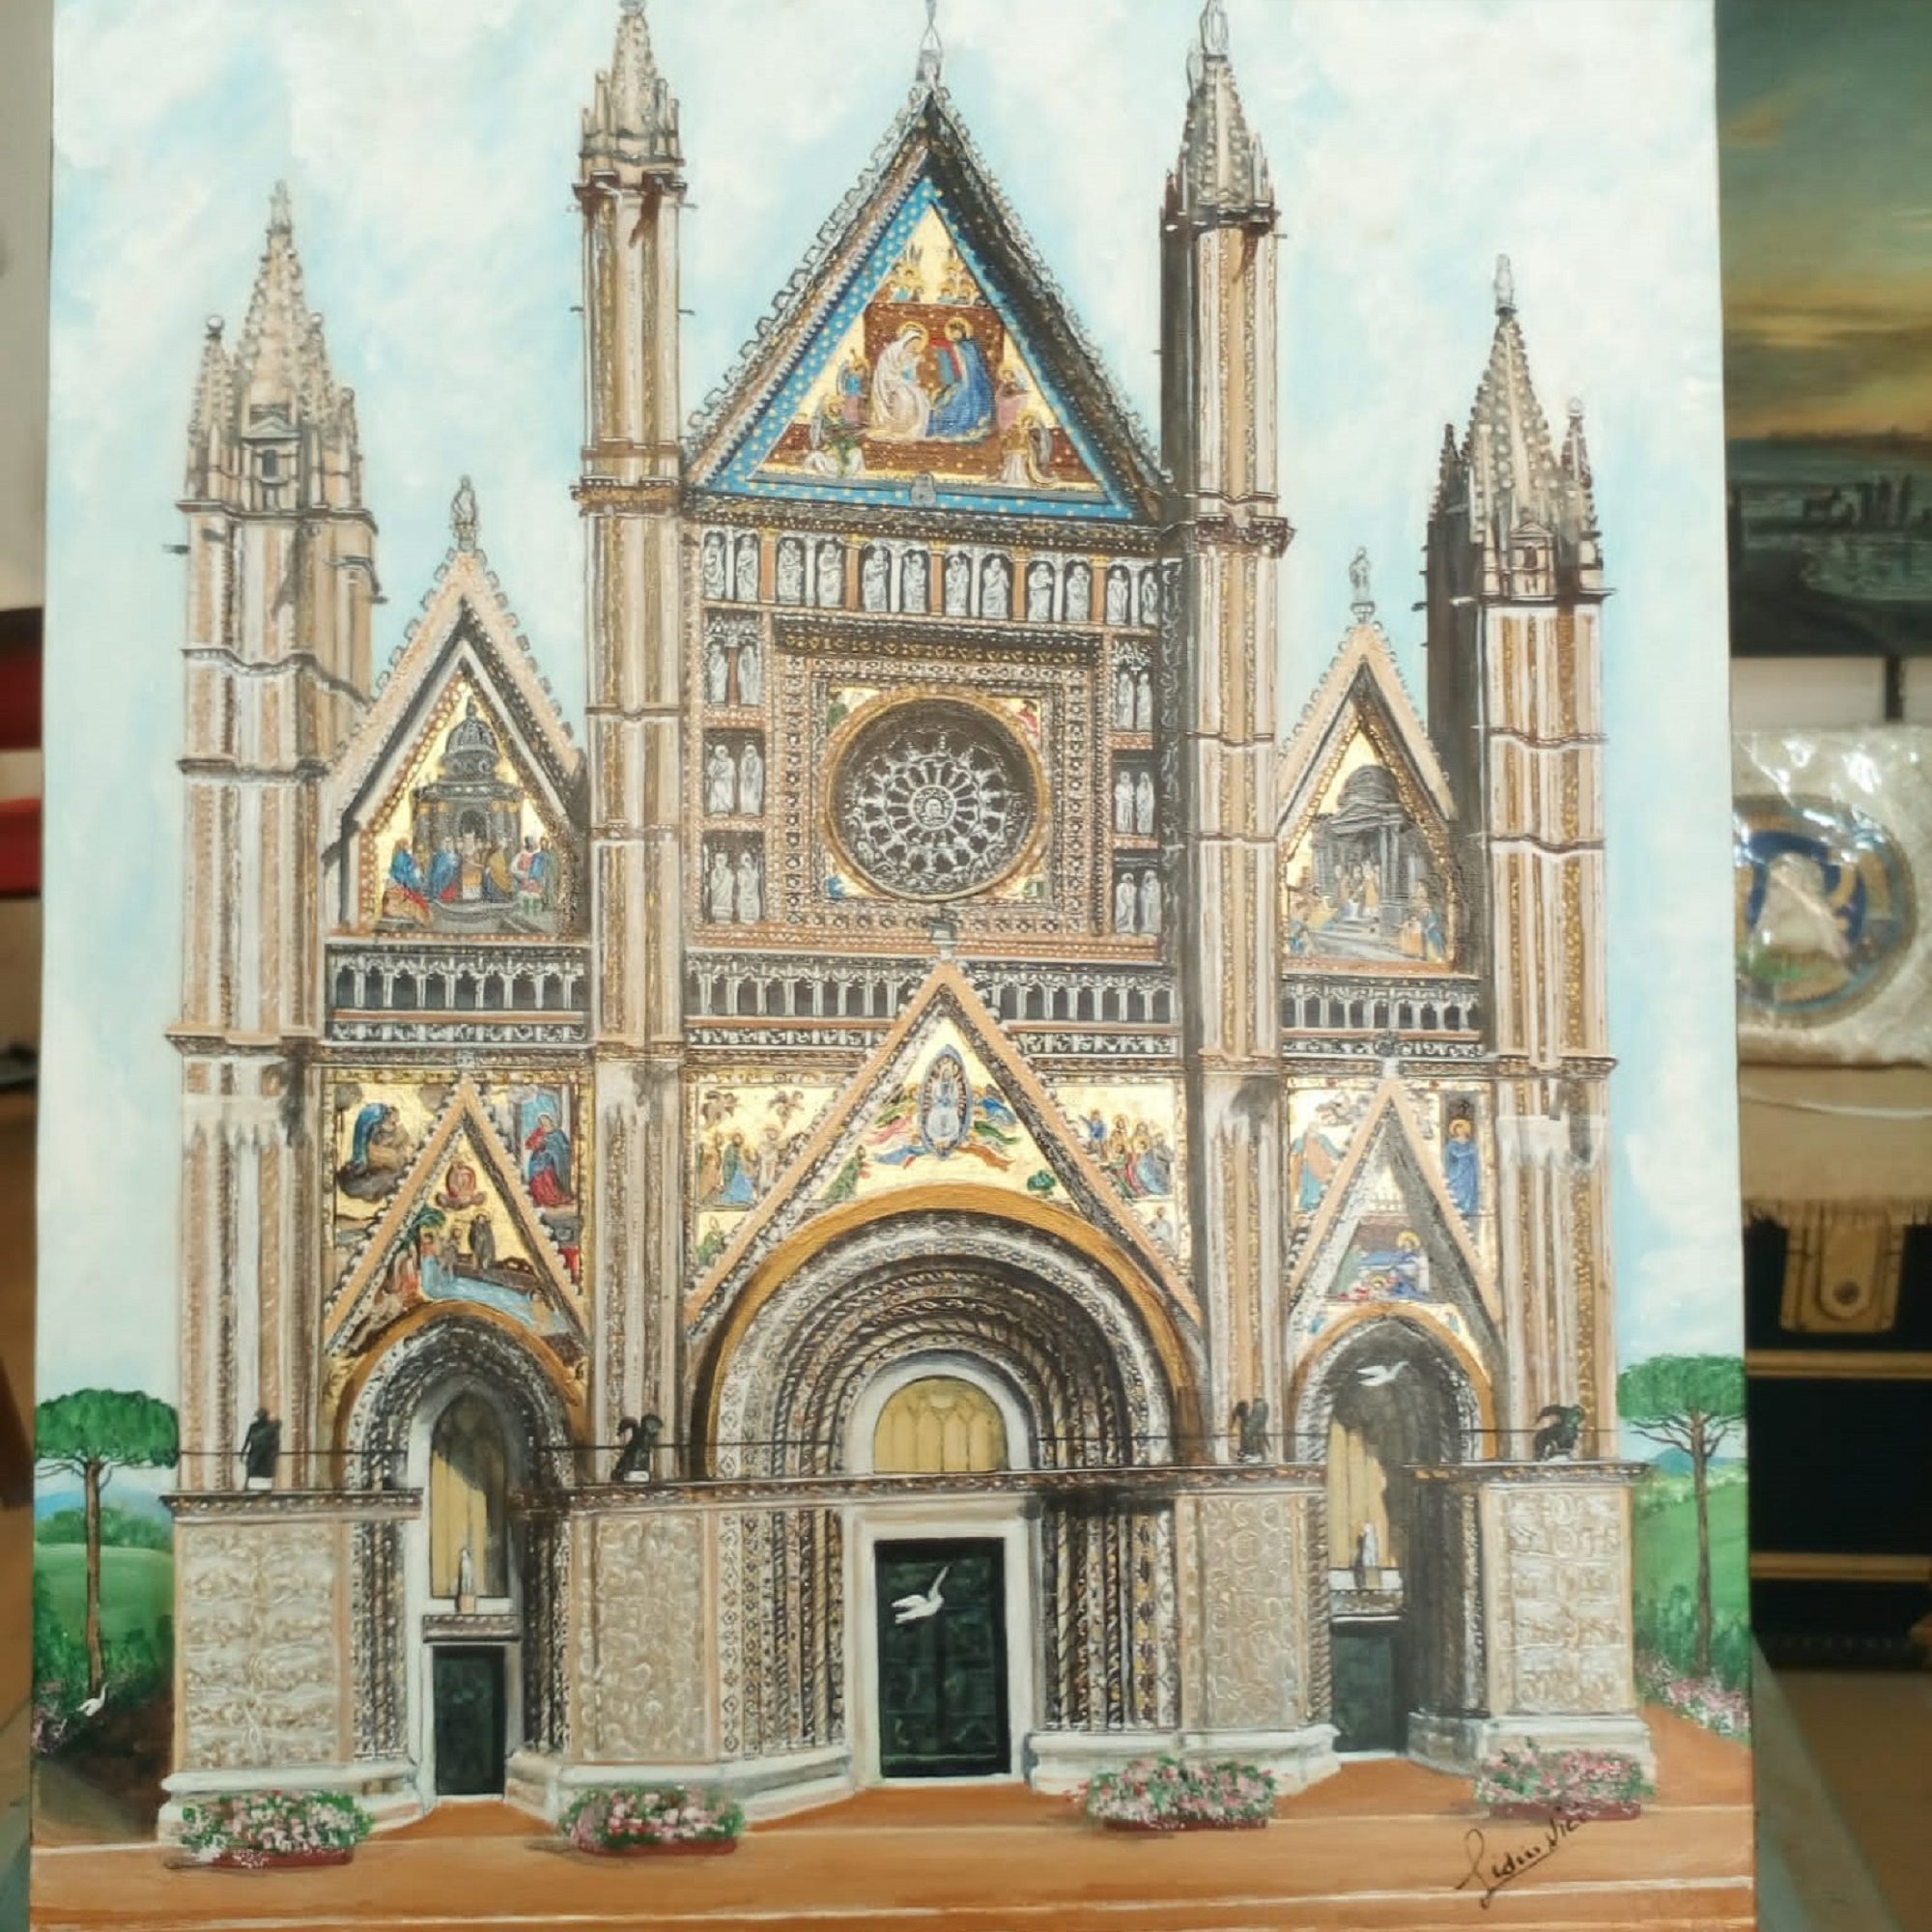 Per info e acquisto: <a href="mailto:studioartelidiavici@gmail.com">studioartelidiavici@gmail.com</a><br>
Duomo di Orvieto, dipinto su tela 40 x 50 cm.